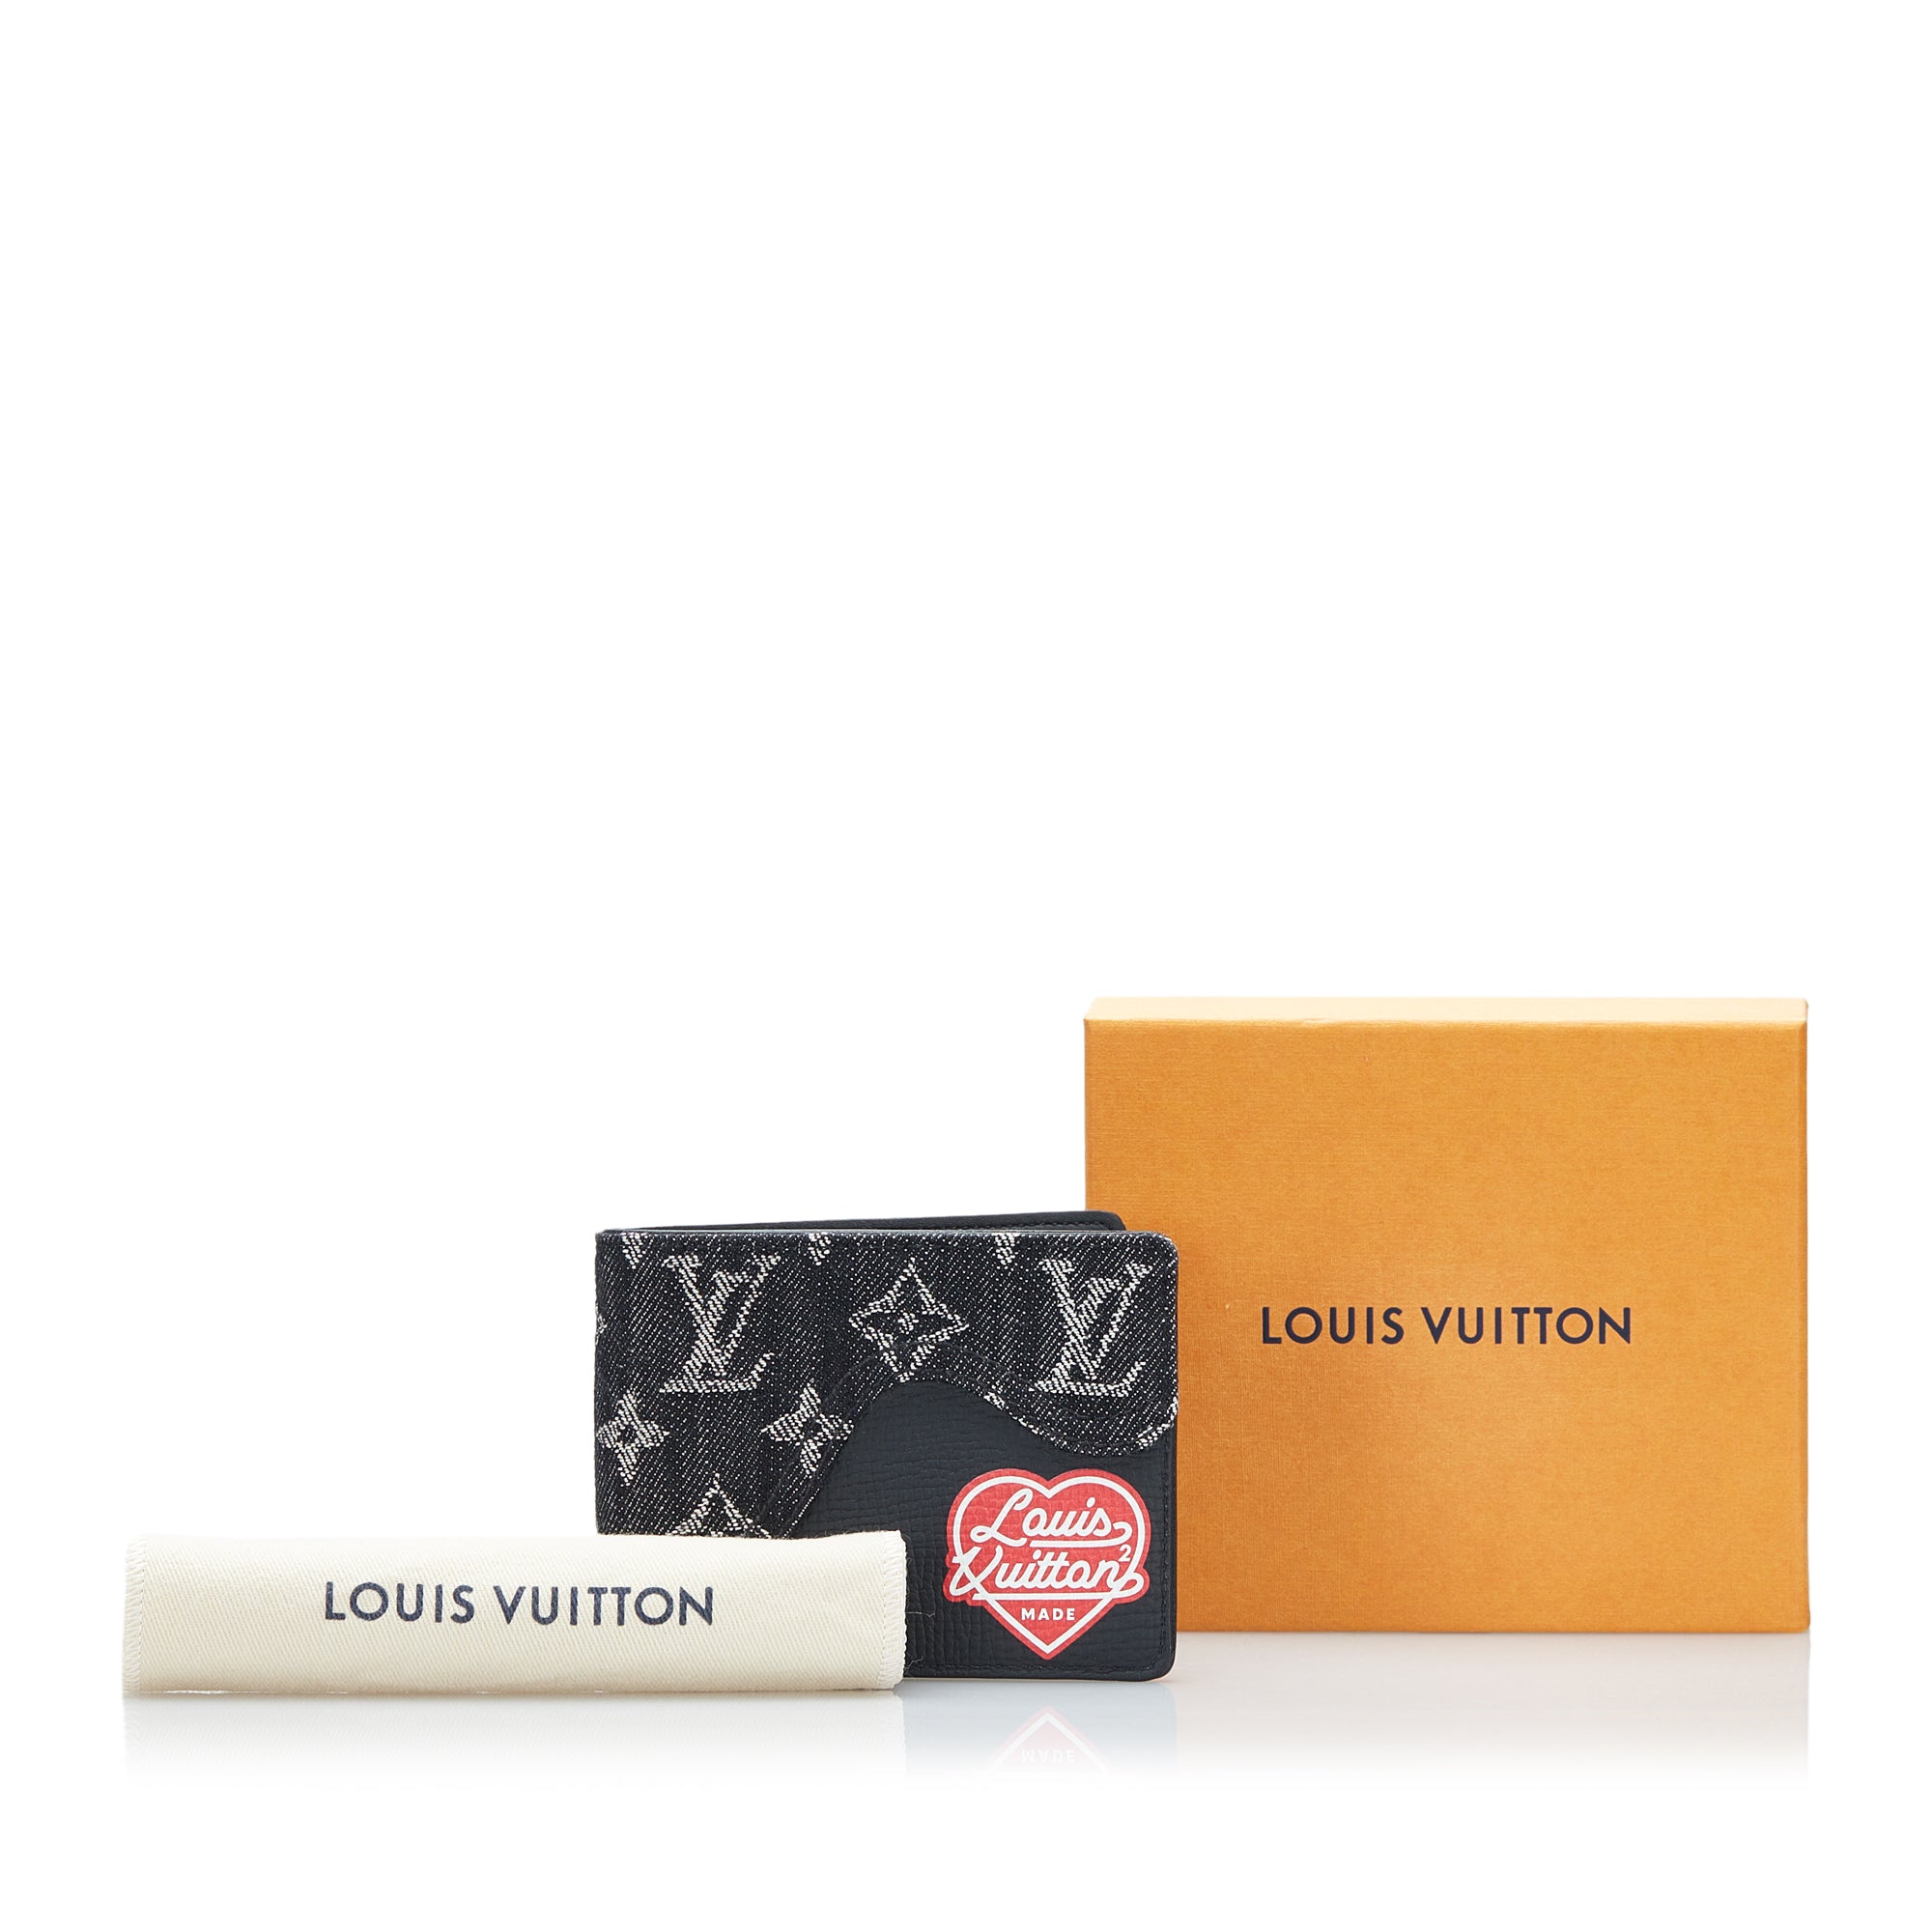 Louis Vuitton x Nigo Slender Wallet Monogram Black in Denim/Leather - US